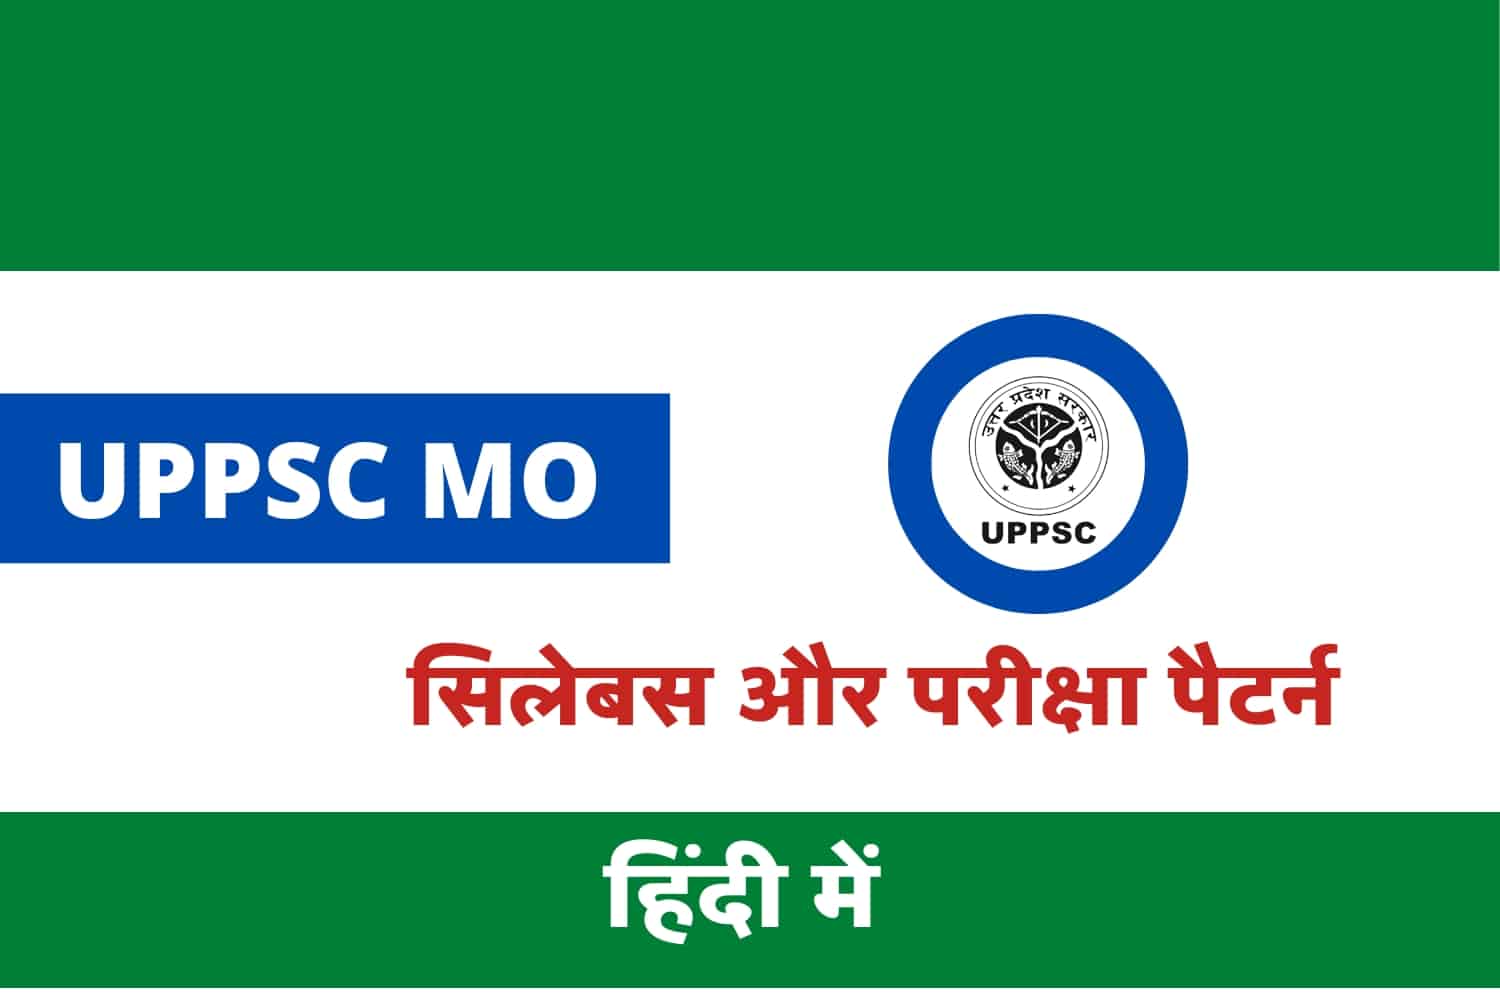 UPPSC Medical Officer Syllabus In Hindi | उत्तर प्रदेश मेडिकल ऑफिसर सिलेबस इन हिंदी